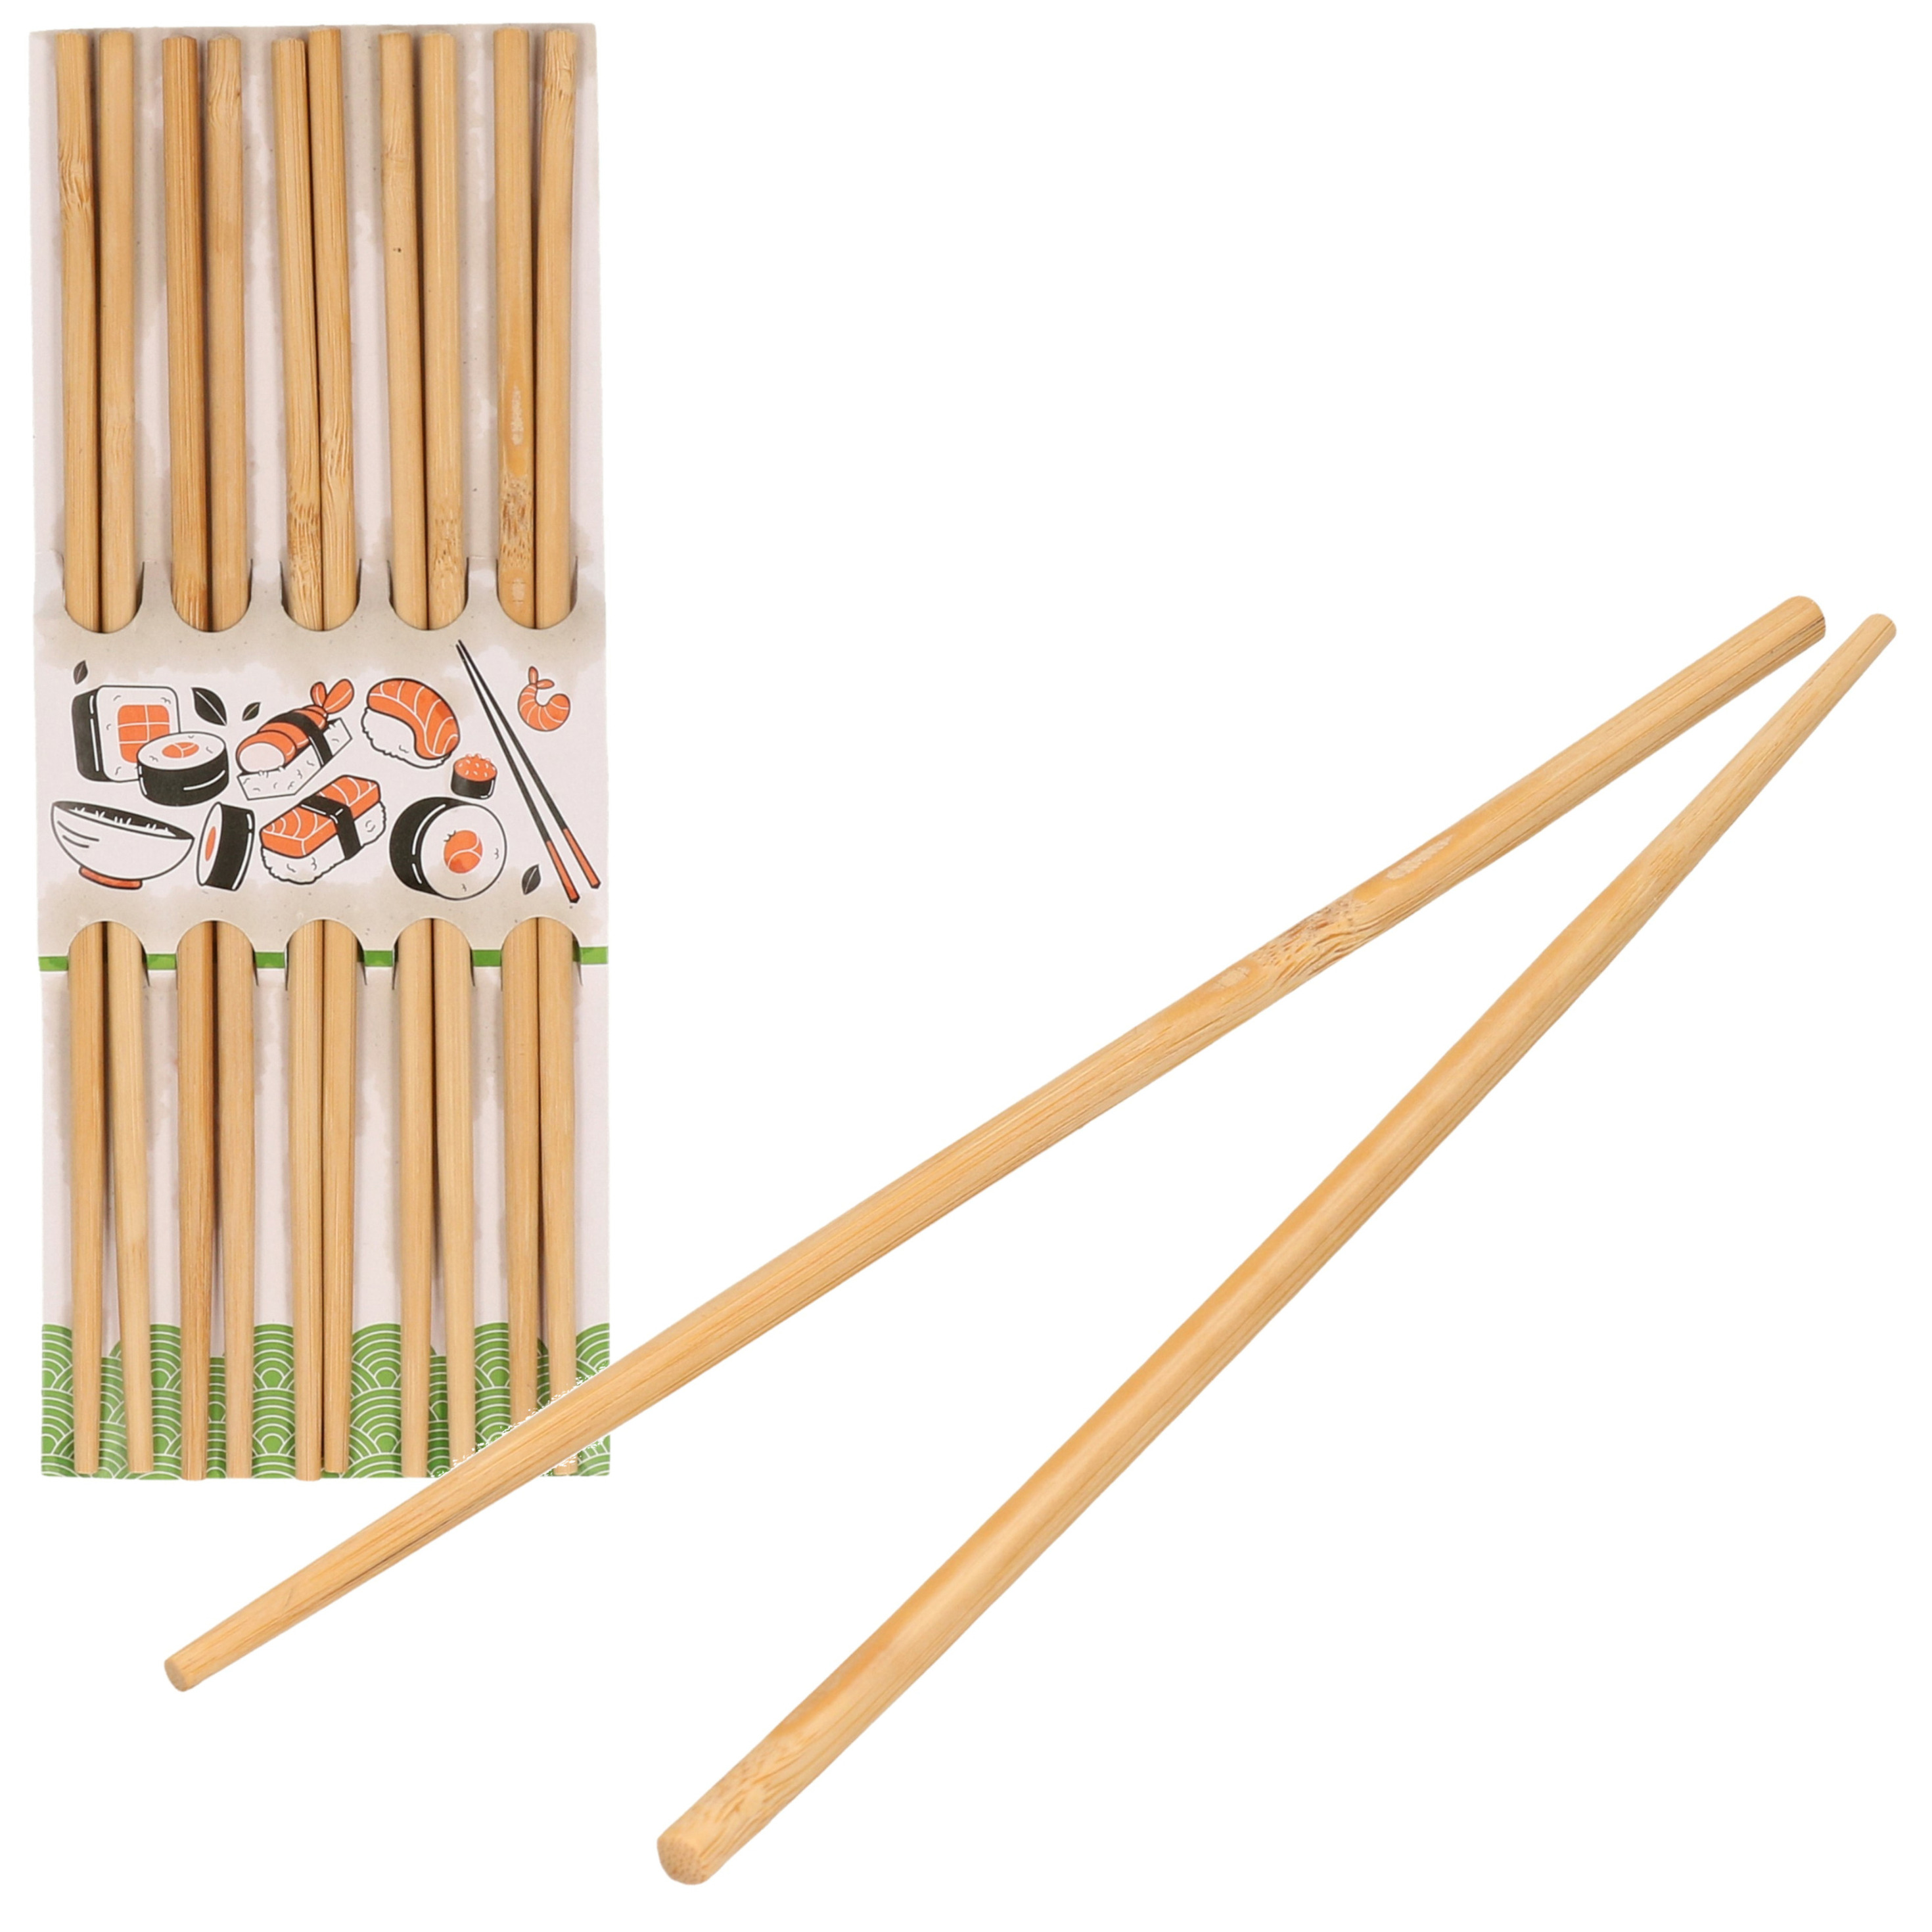 Sushi eetstokjes 5x setjes bamboe hout 24 cm